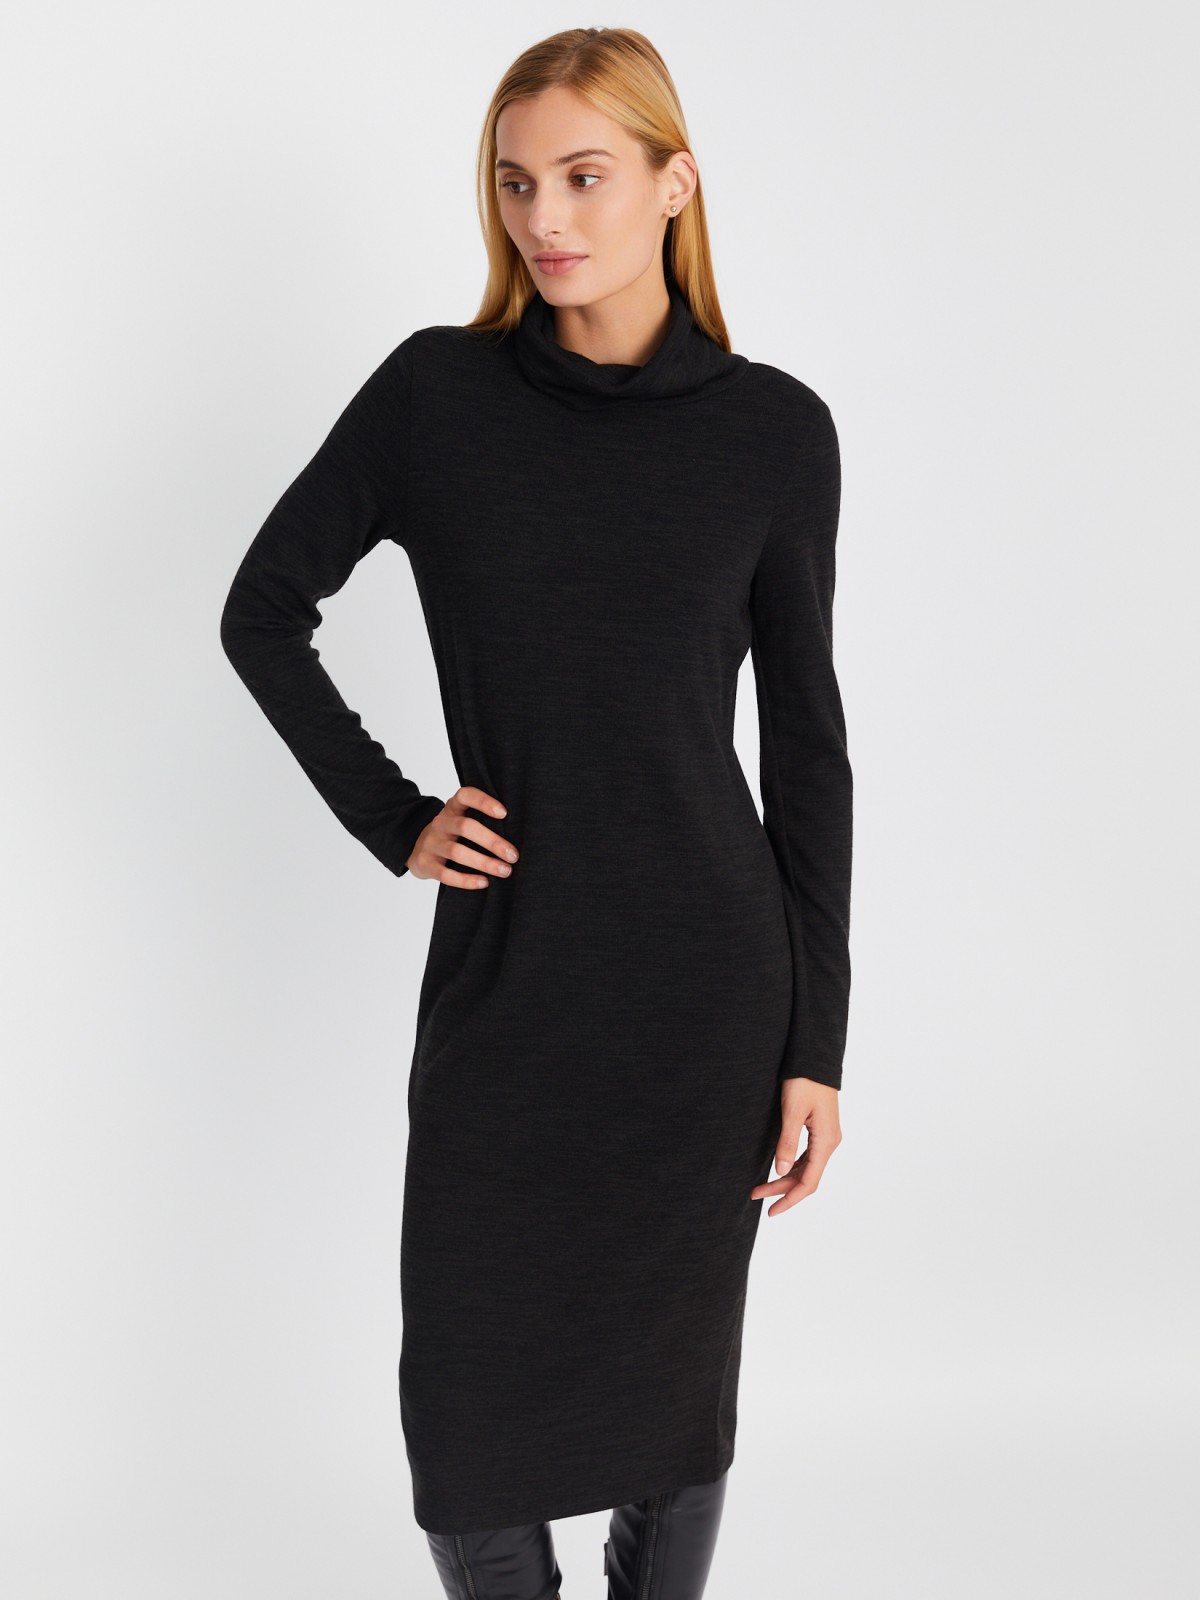 Трикотажное платье-свитер длины миди с высоким горлом zolla 02334819F062, цвет темно-серый, размер XS